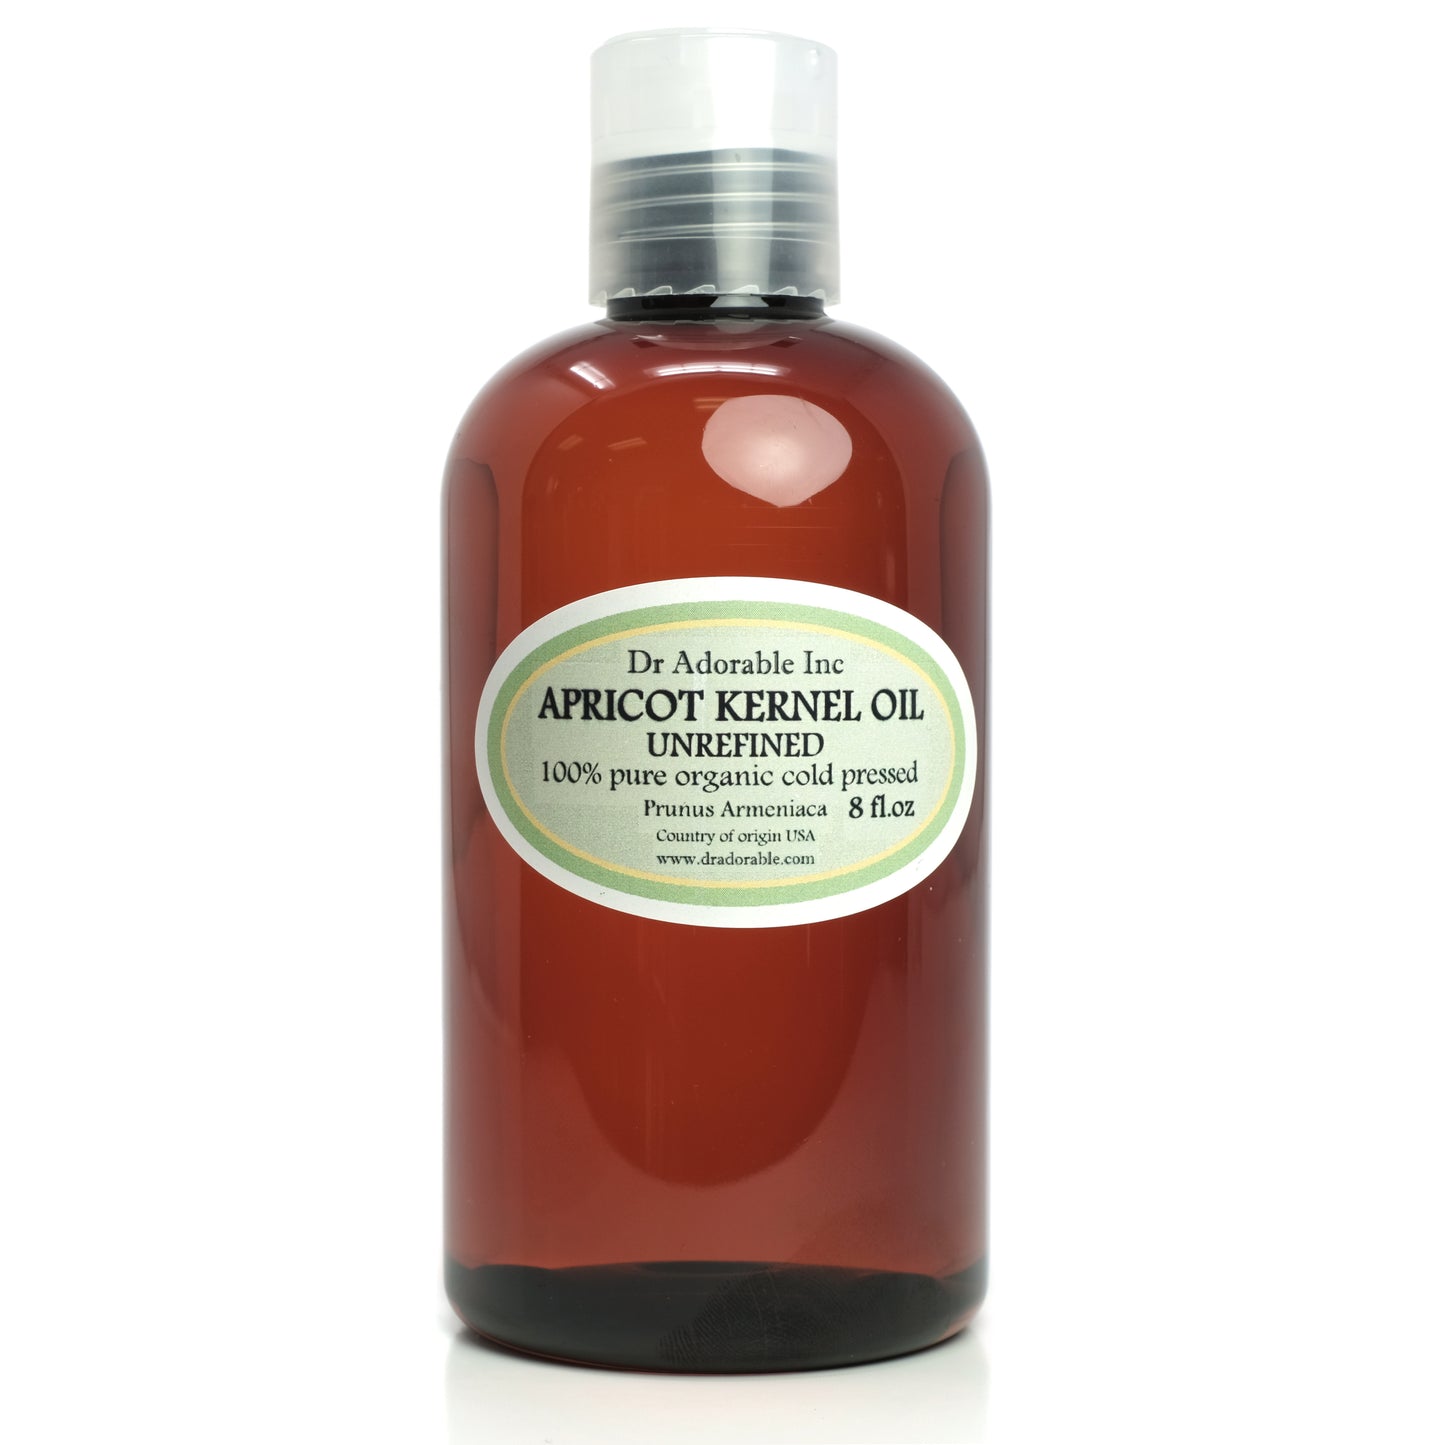 Apricot Kernel Oil Unrefined - 100% Pure Natural Organic Cold Pressed